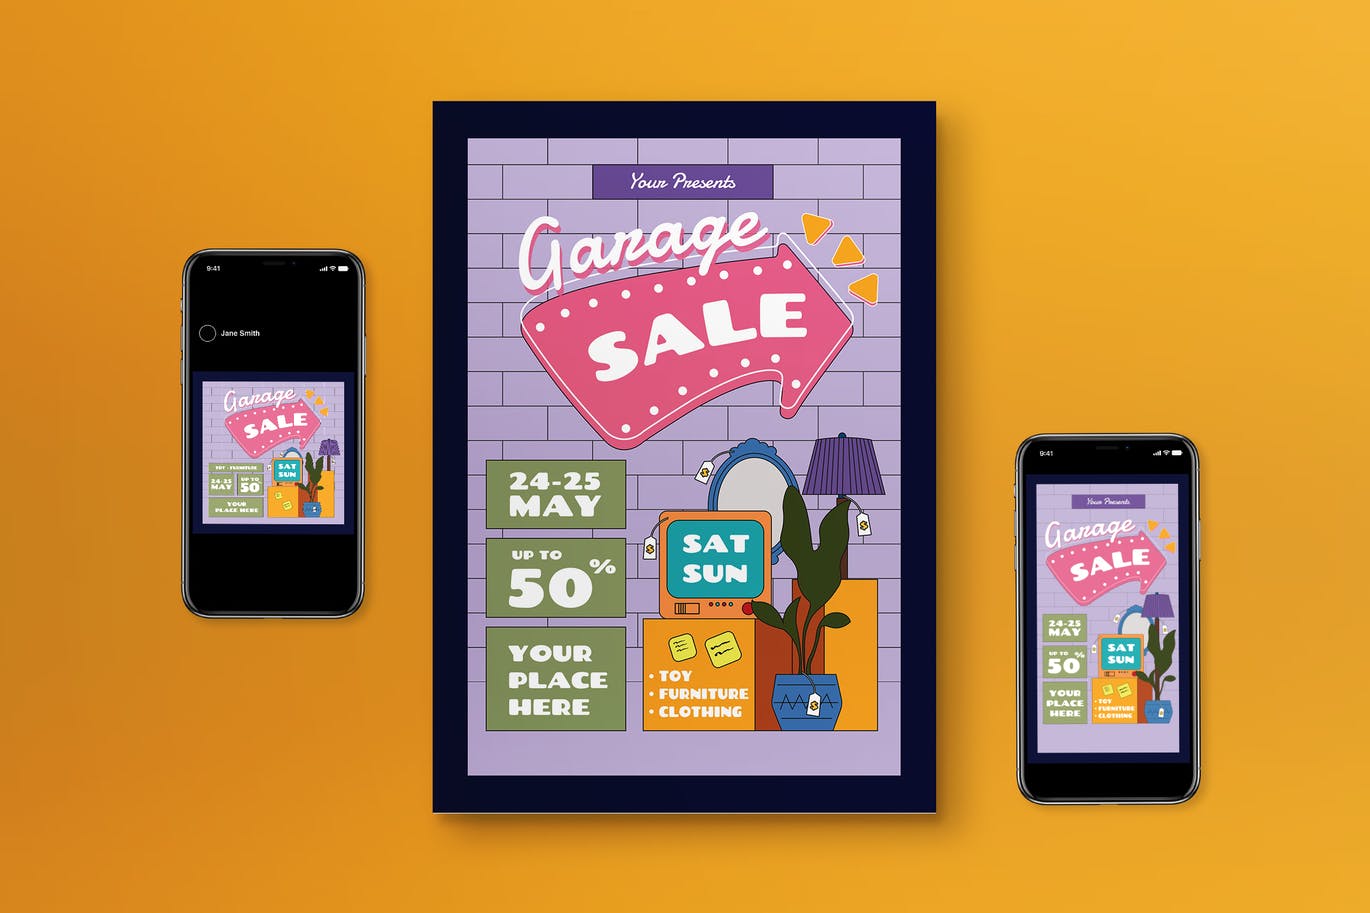 旧货销售宣传单设计模板 Garage Sale Flyer Set 设计素材 第1张